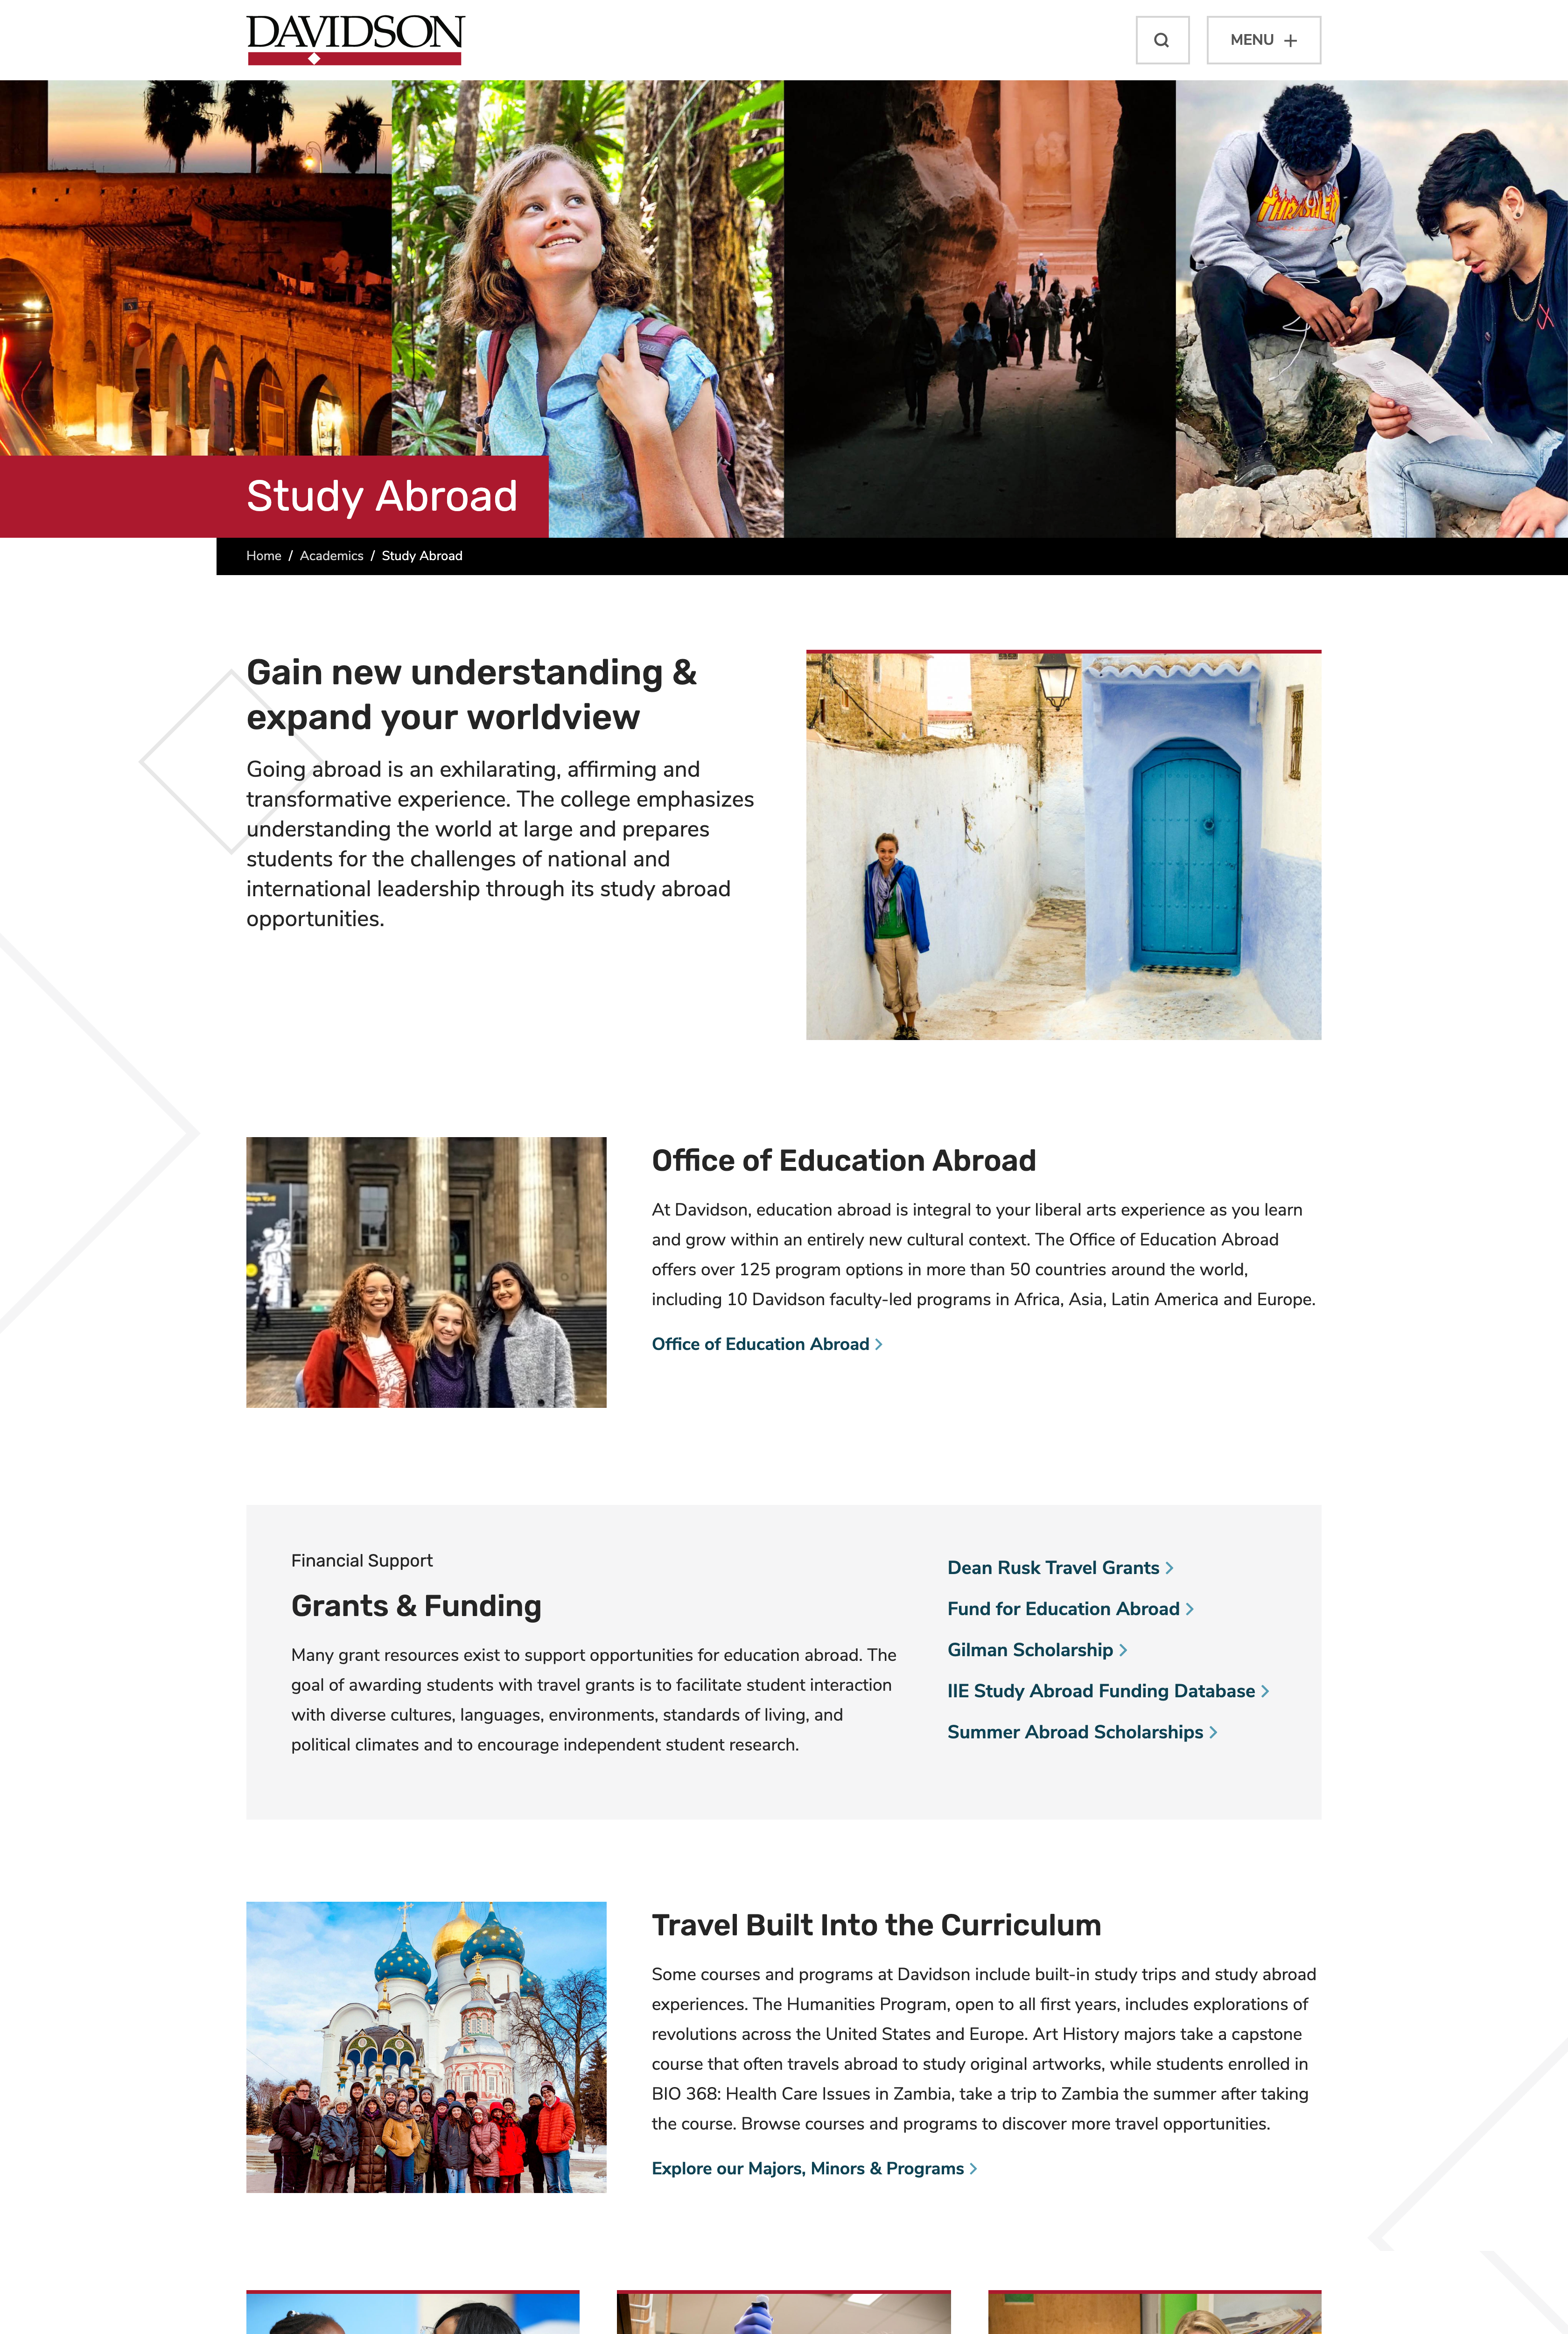 Screenshot of Study Abroad page on Davidson.edu